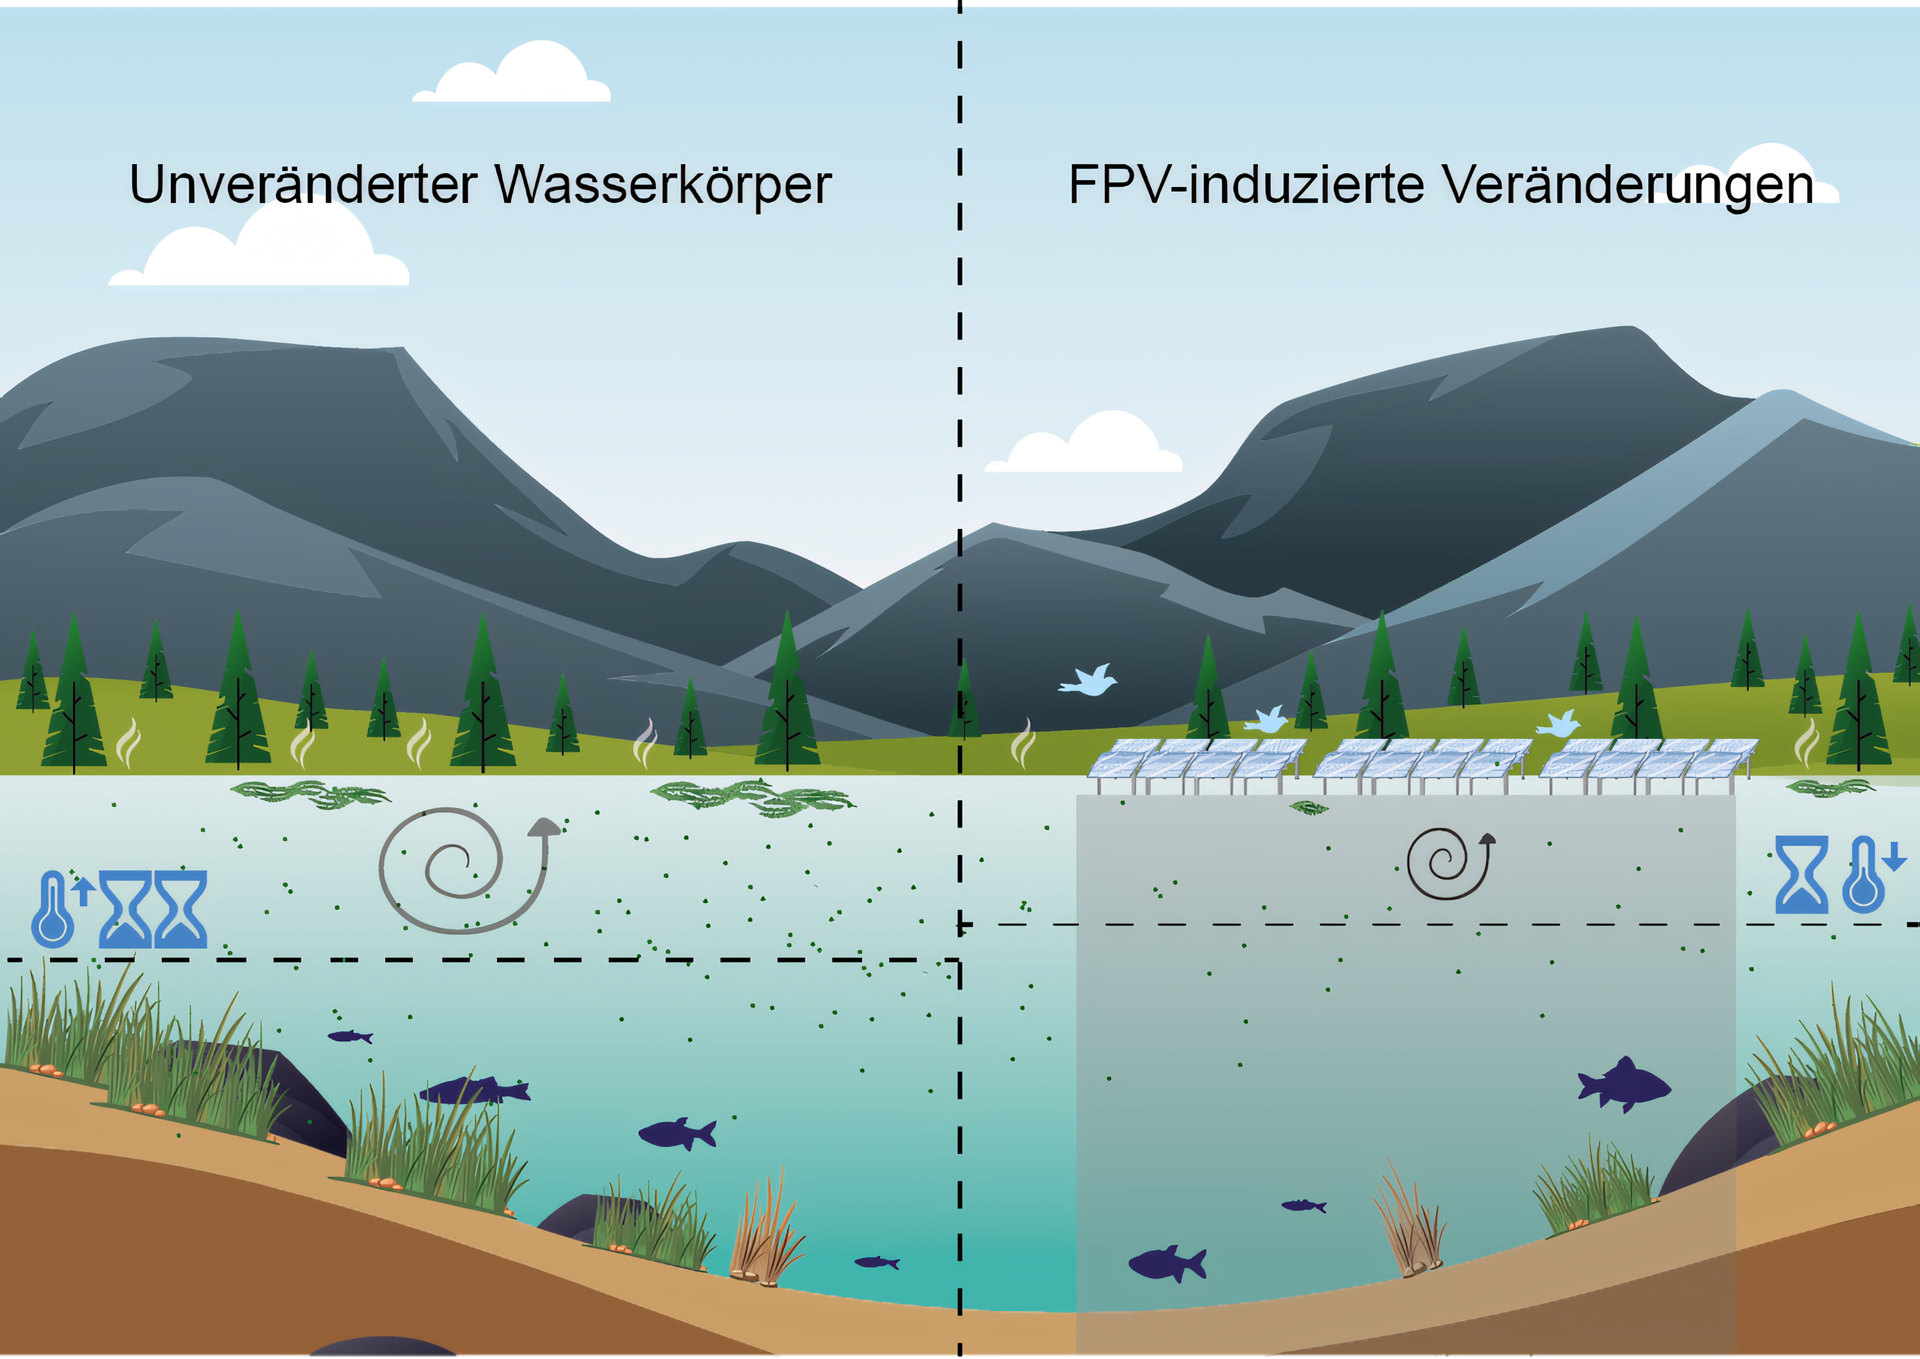 Auswirkungen der Bedeckung eines FPV-Systems auf den Wasserkörper im direkten Vergleich zu einem unbedeckten Wasserkörper.